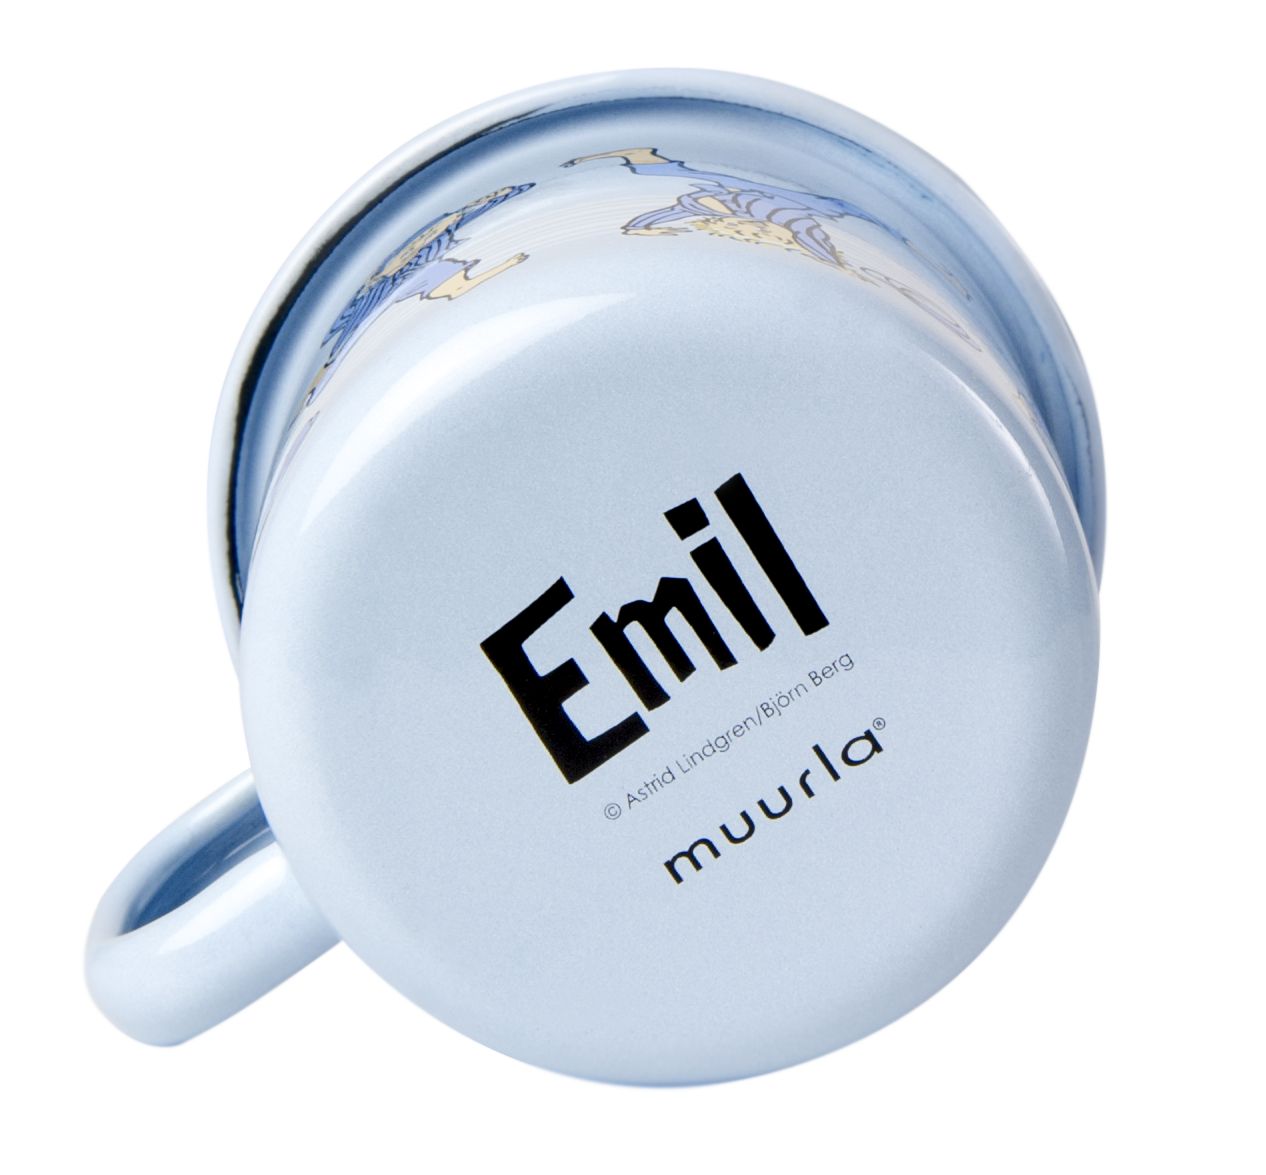 Muurla Emil Of Lönnerberga Enamel Mug Emil Light Blue, 2,5 Dl